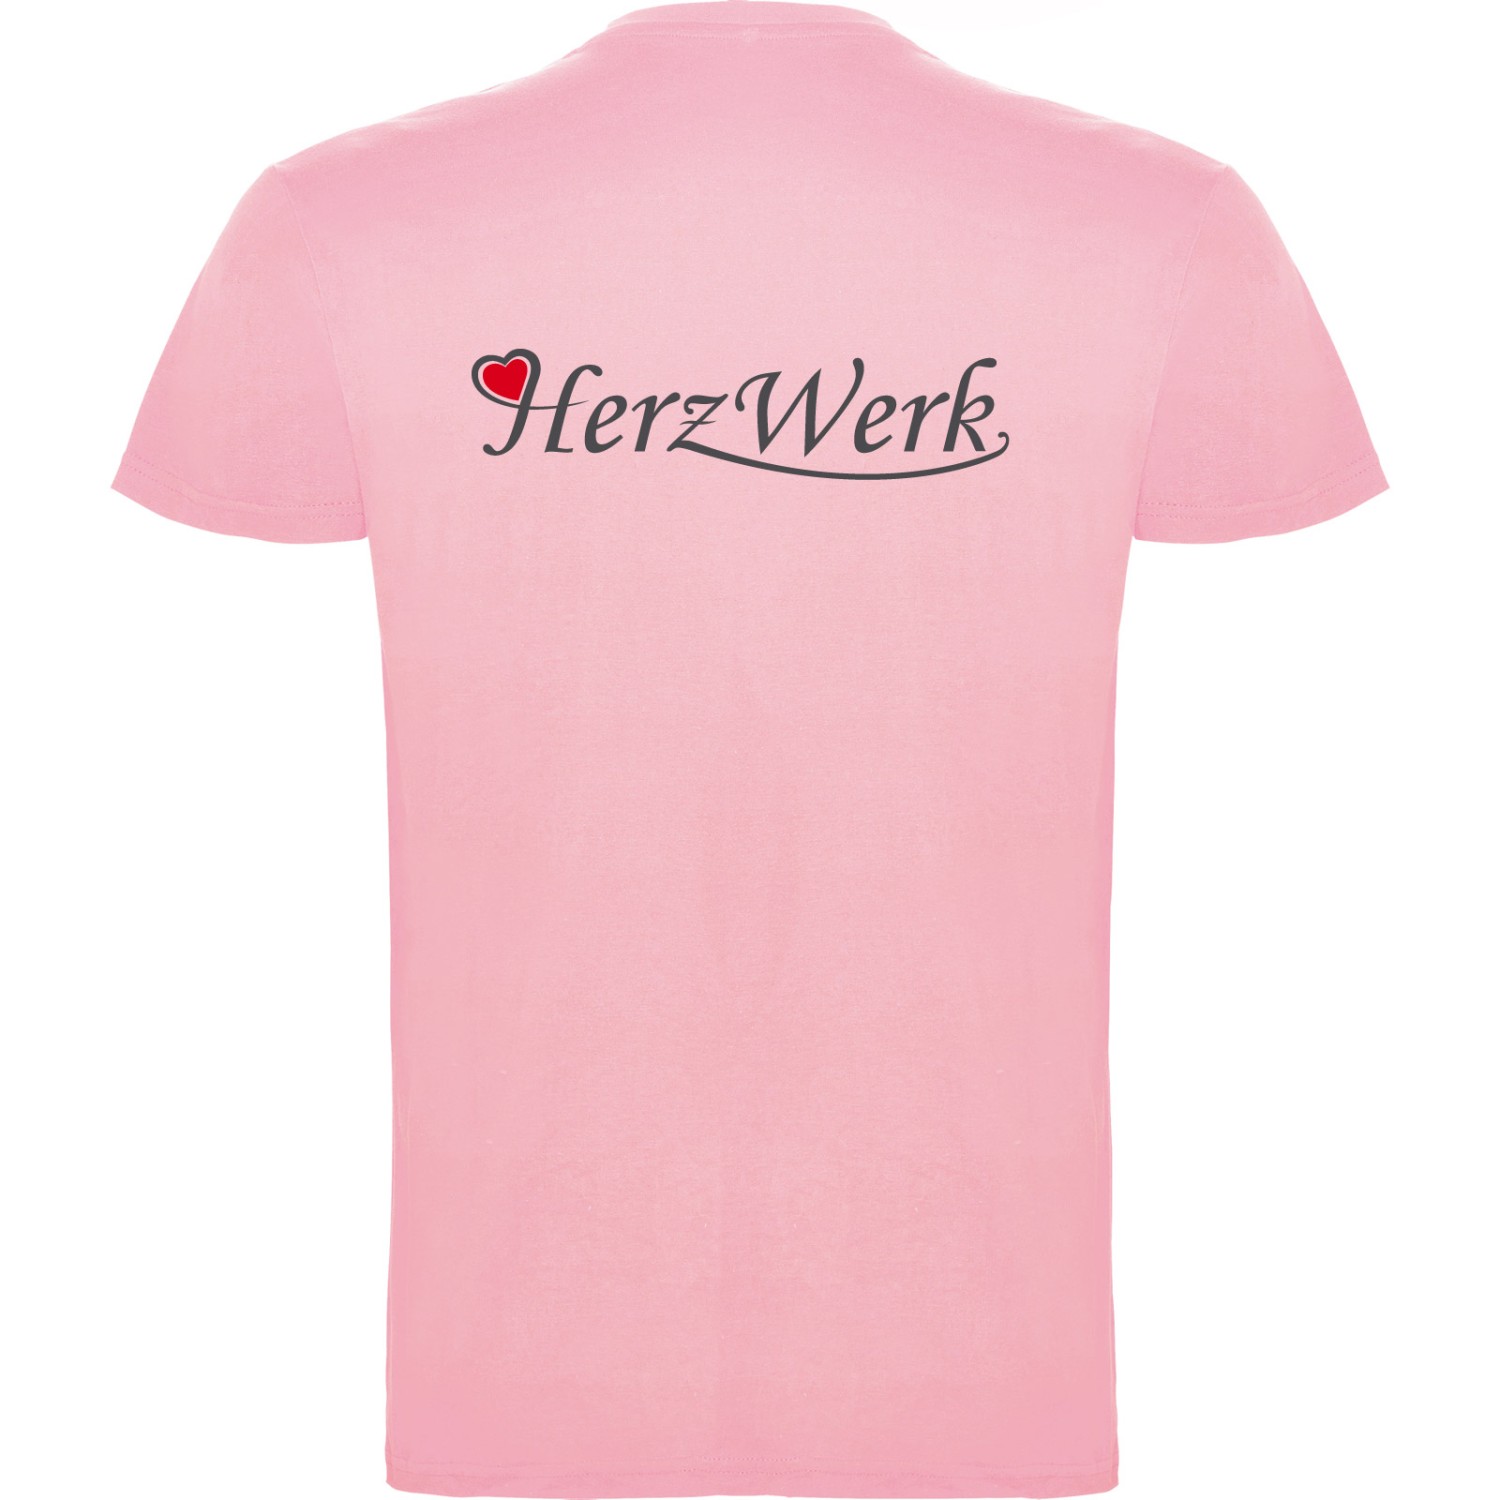 2. Foto T-Shirt BEAGLE Kurzarm Rundhals mit Druck (Farbe: light pink Größe: XXL)